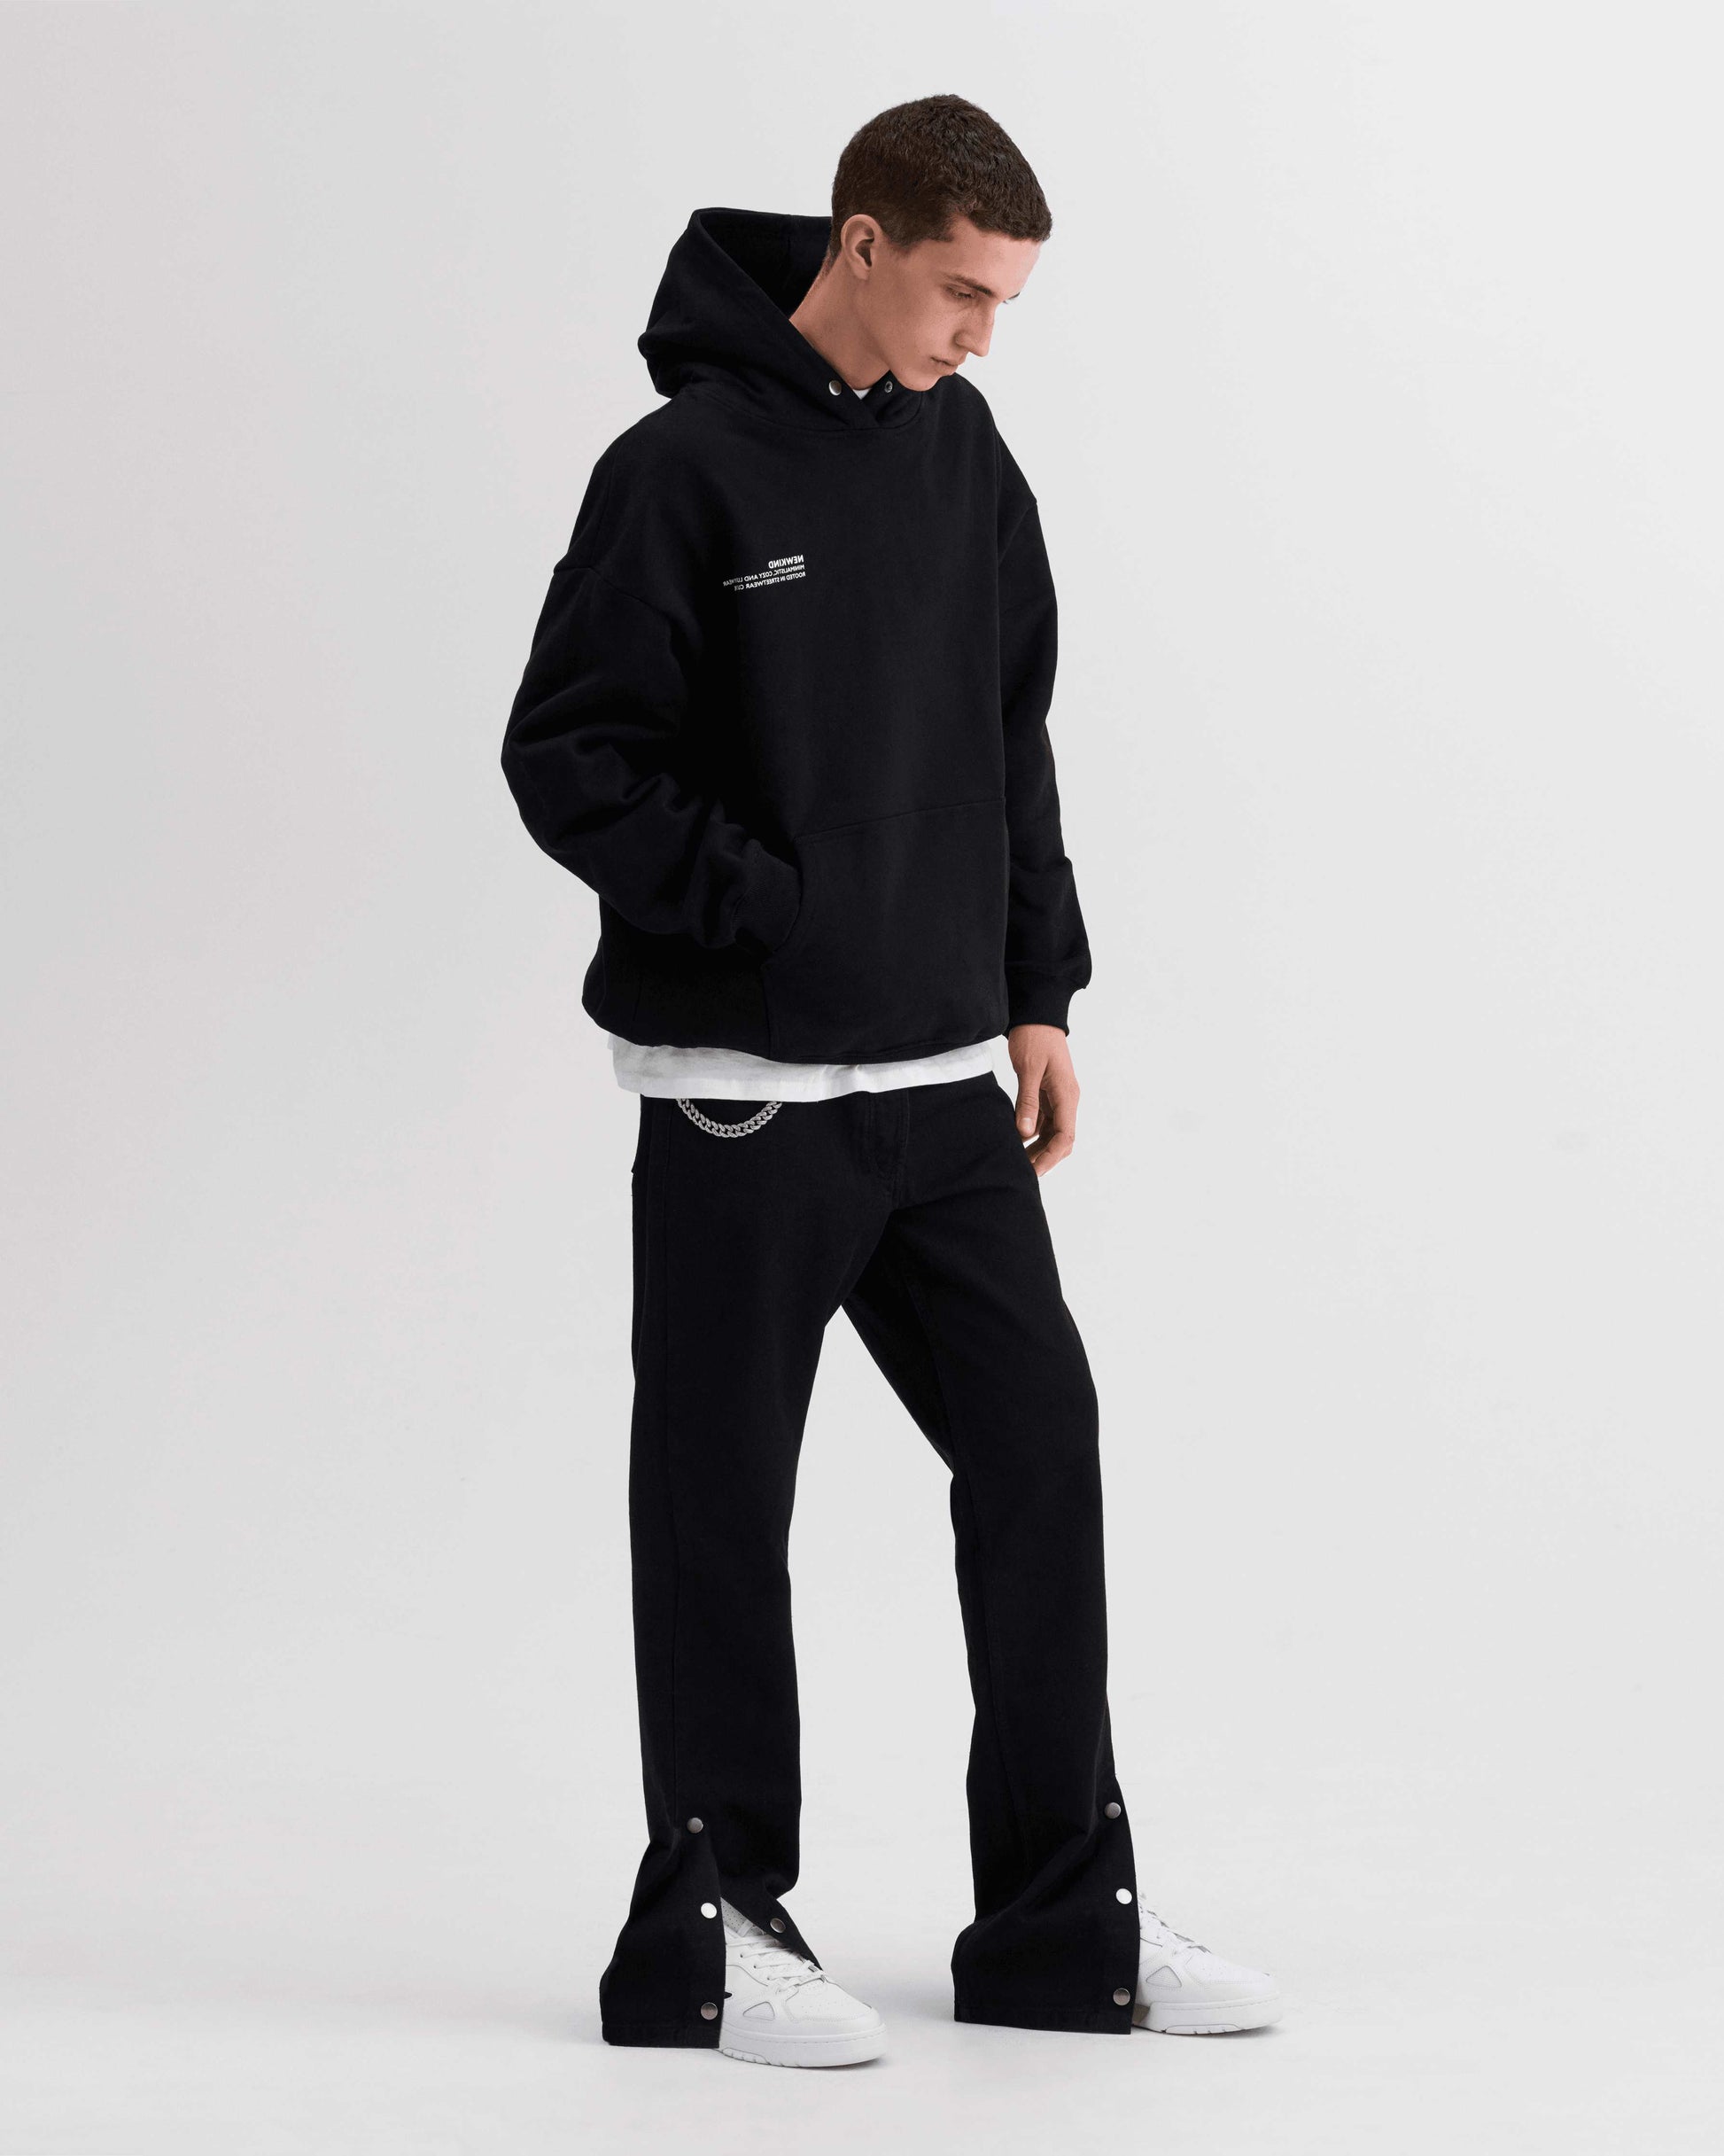 NEWKIND / Black hoodie, essential hoodie, hoodie, hoodies, hoodie for men, men's hoodie, graphic hoodies